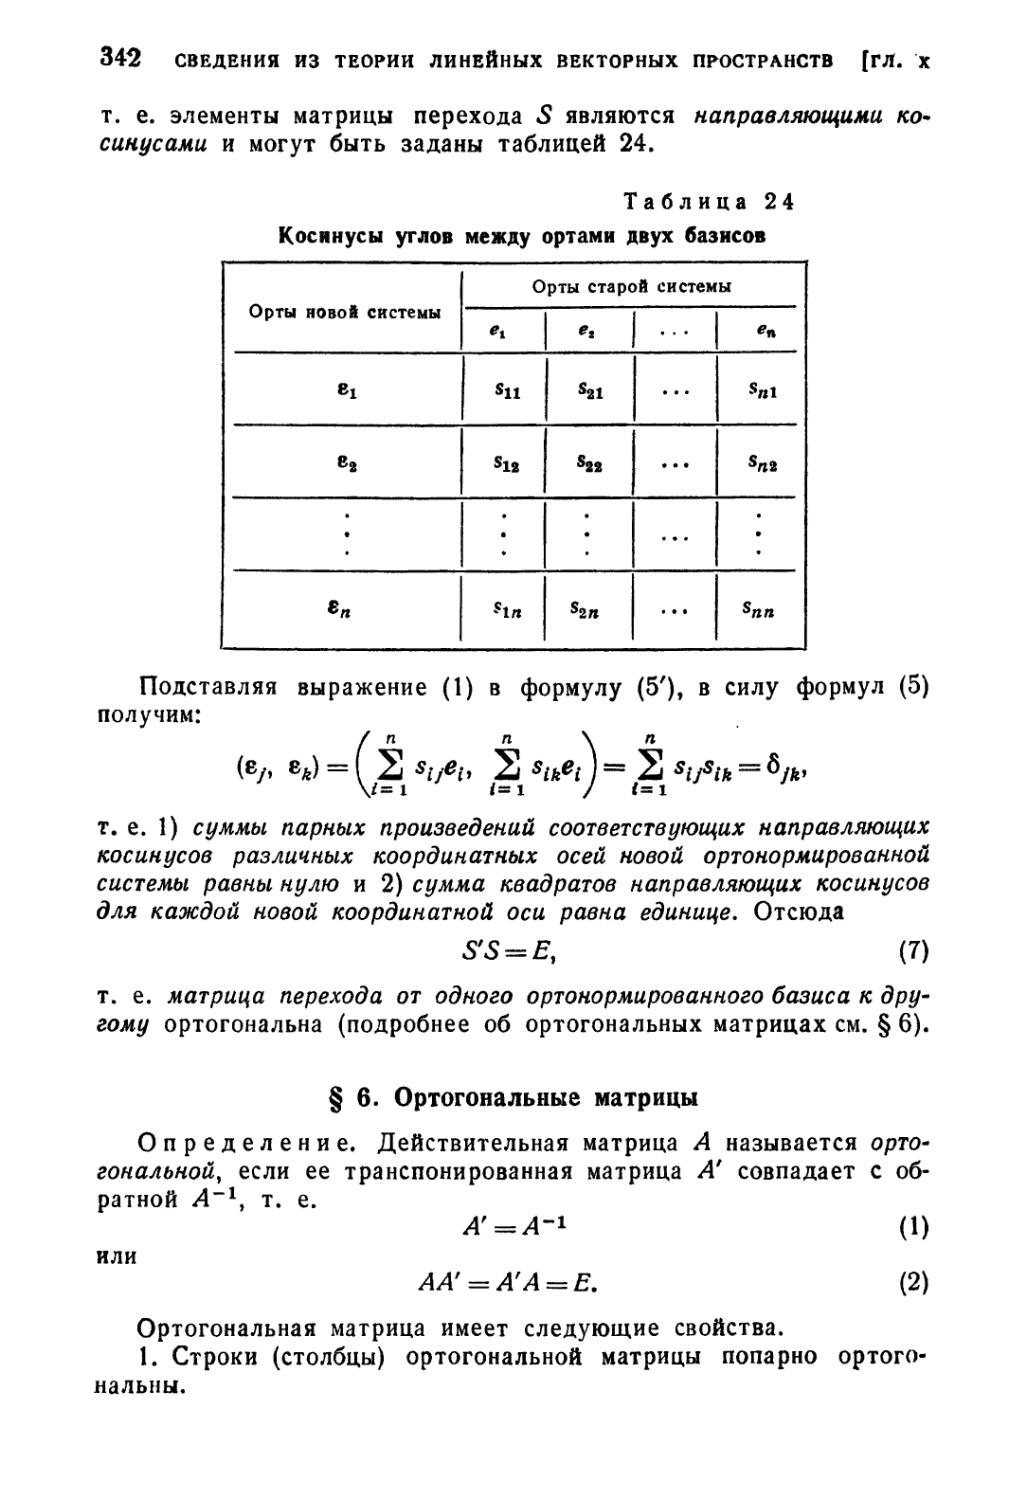 § 6. Ортогональные матрицы